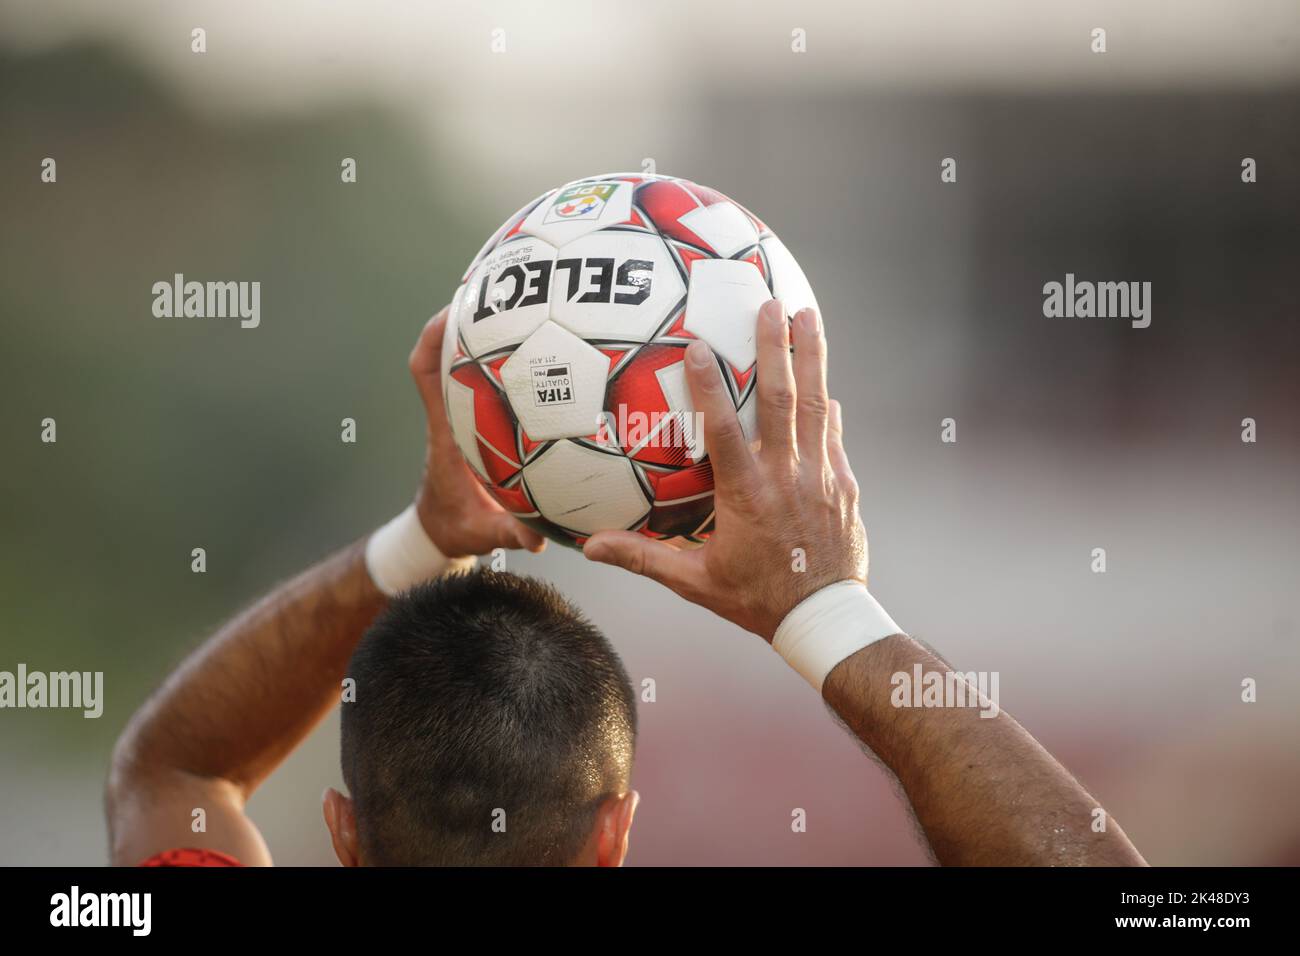 Giurgiu, Rumänien - 29. Juni 2020: Wählen Sie den offiziellen brillanten Super TB-Fußballball, den ein Spieler während eines Spiels geworfen hat. Stockfoto